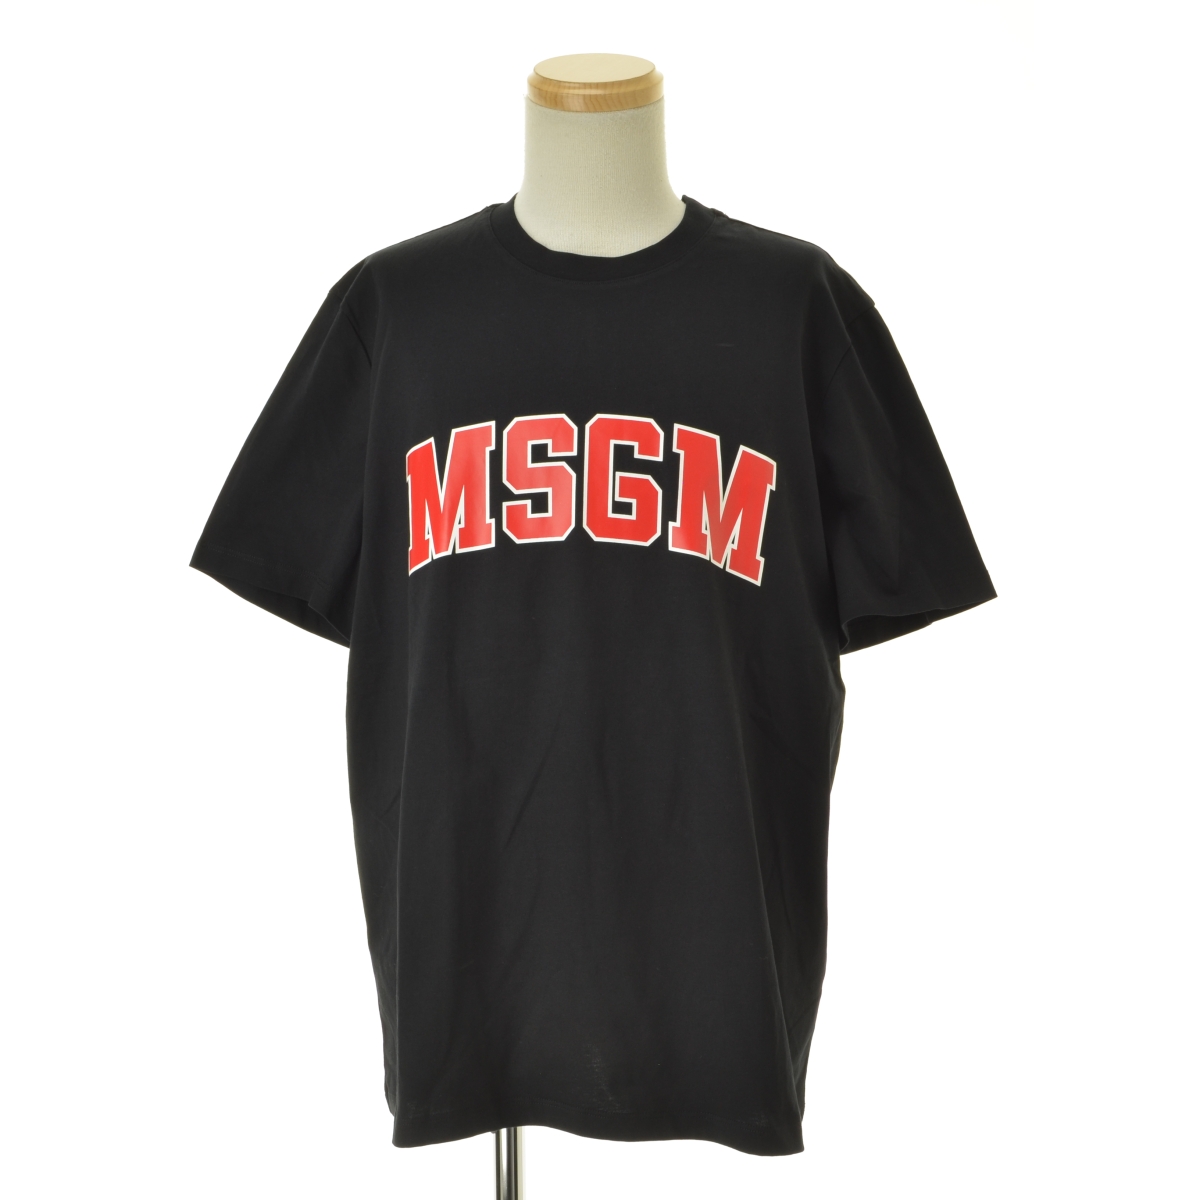 MSGM / エムエスジーエム 20SS 2840MM86 ロゴ 半袖Tシャツ -ブランド古着の買取販売カンフル